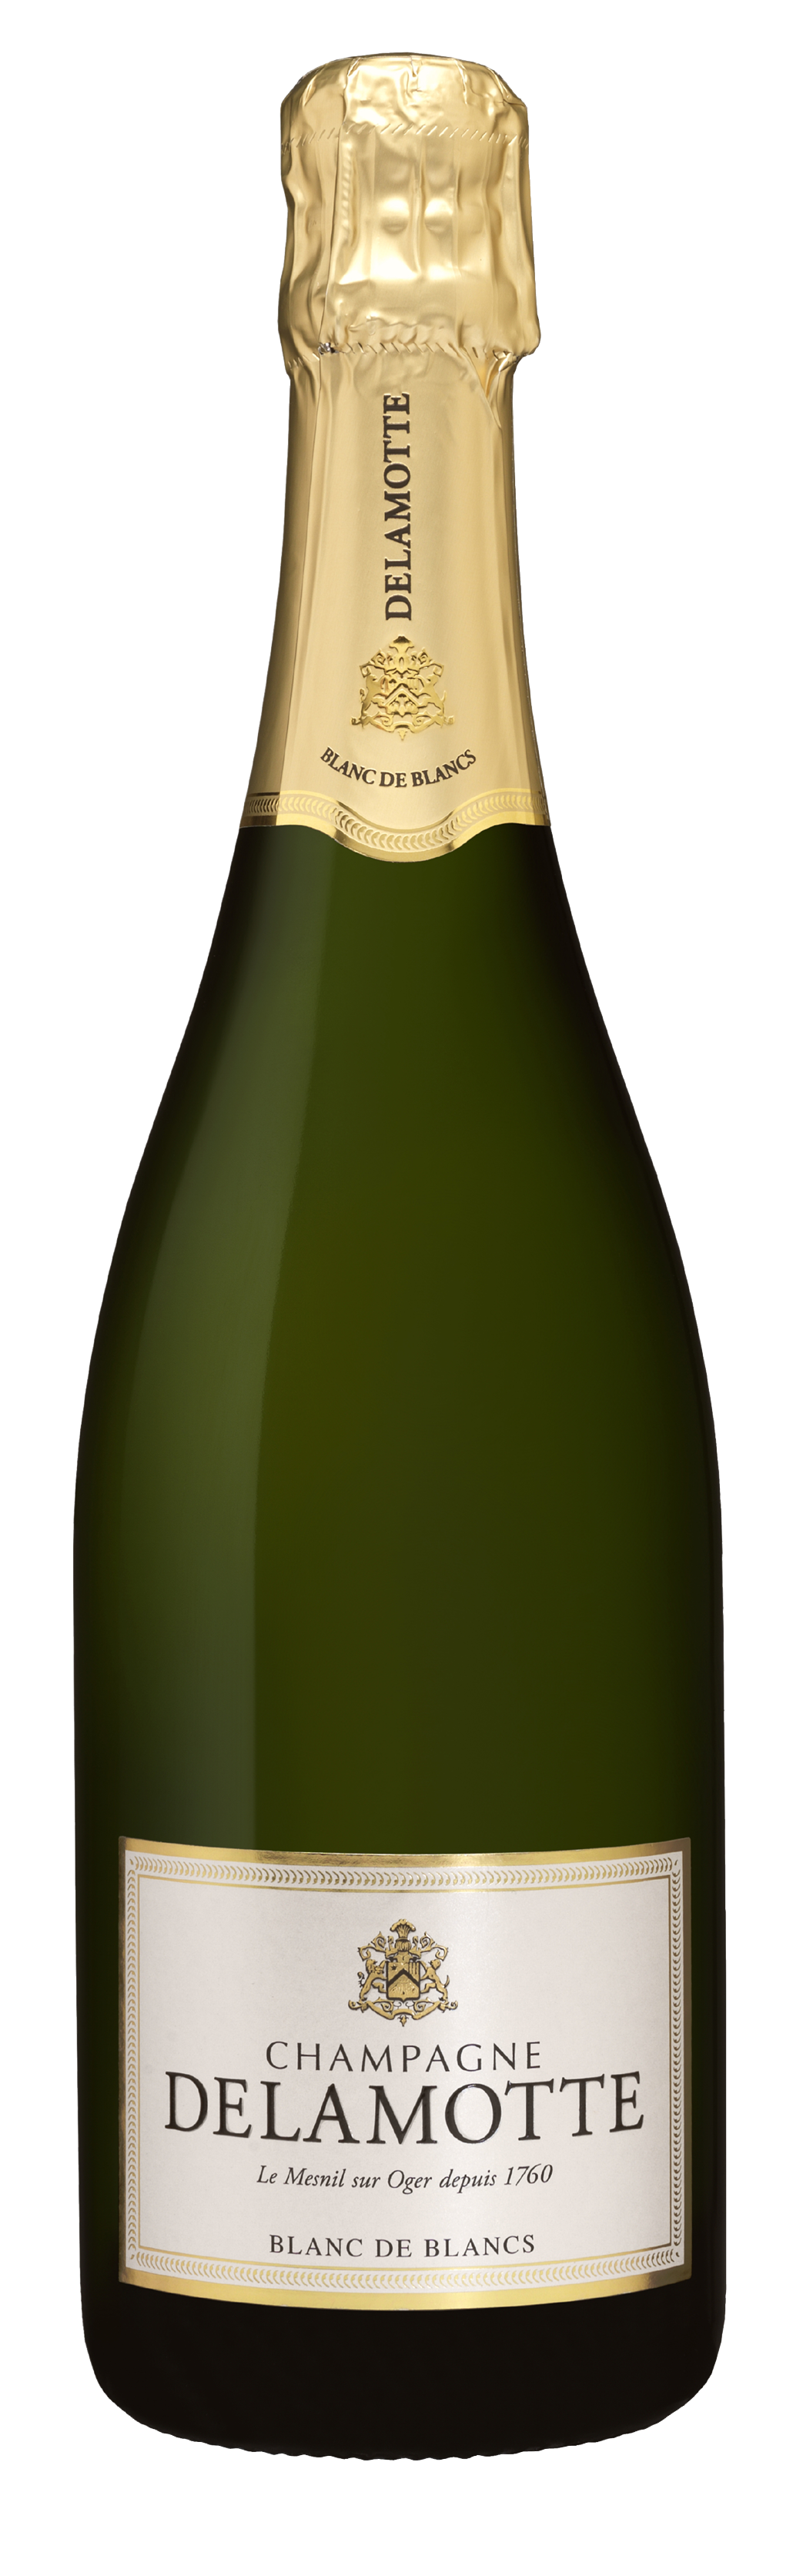 Champagne Delamotte<br />2014 Brut Blanc de Blancs<br>France